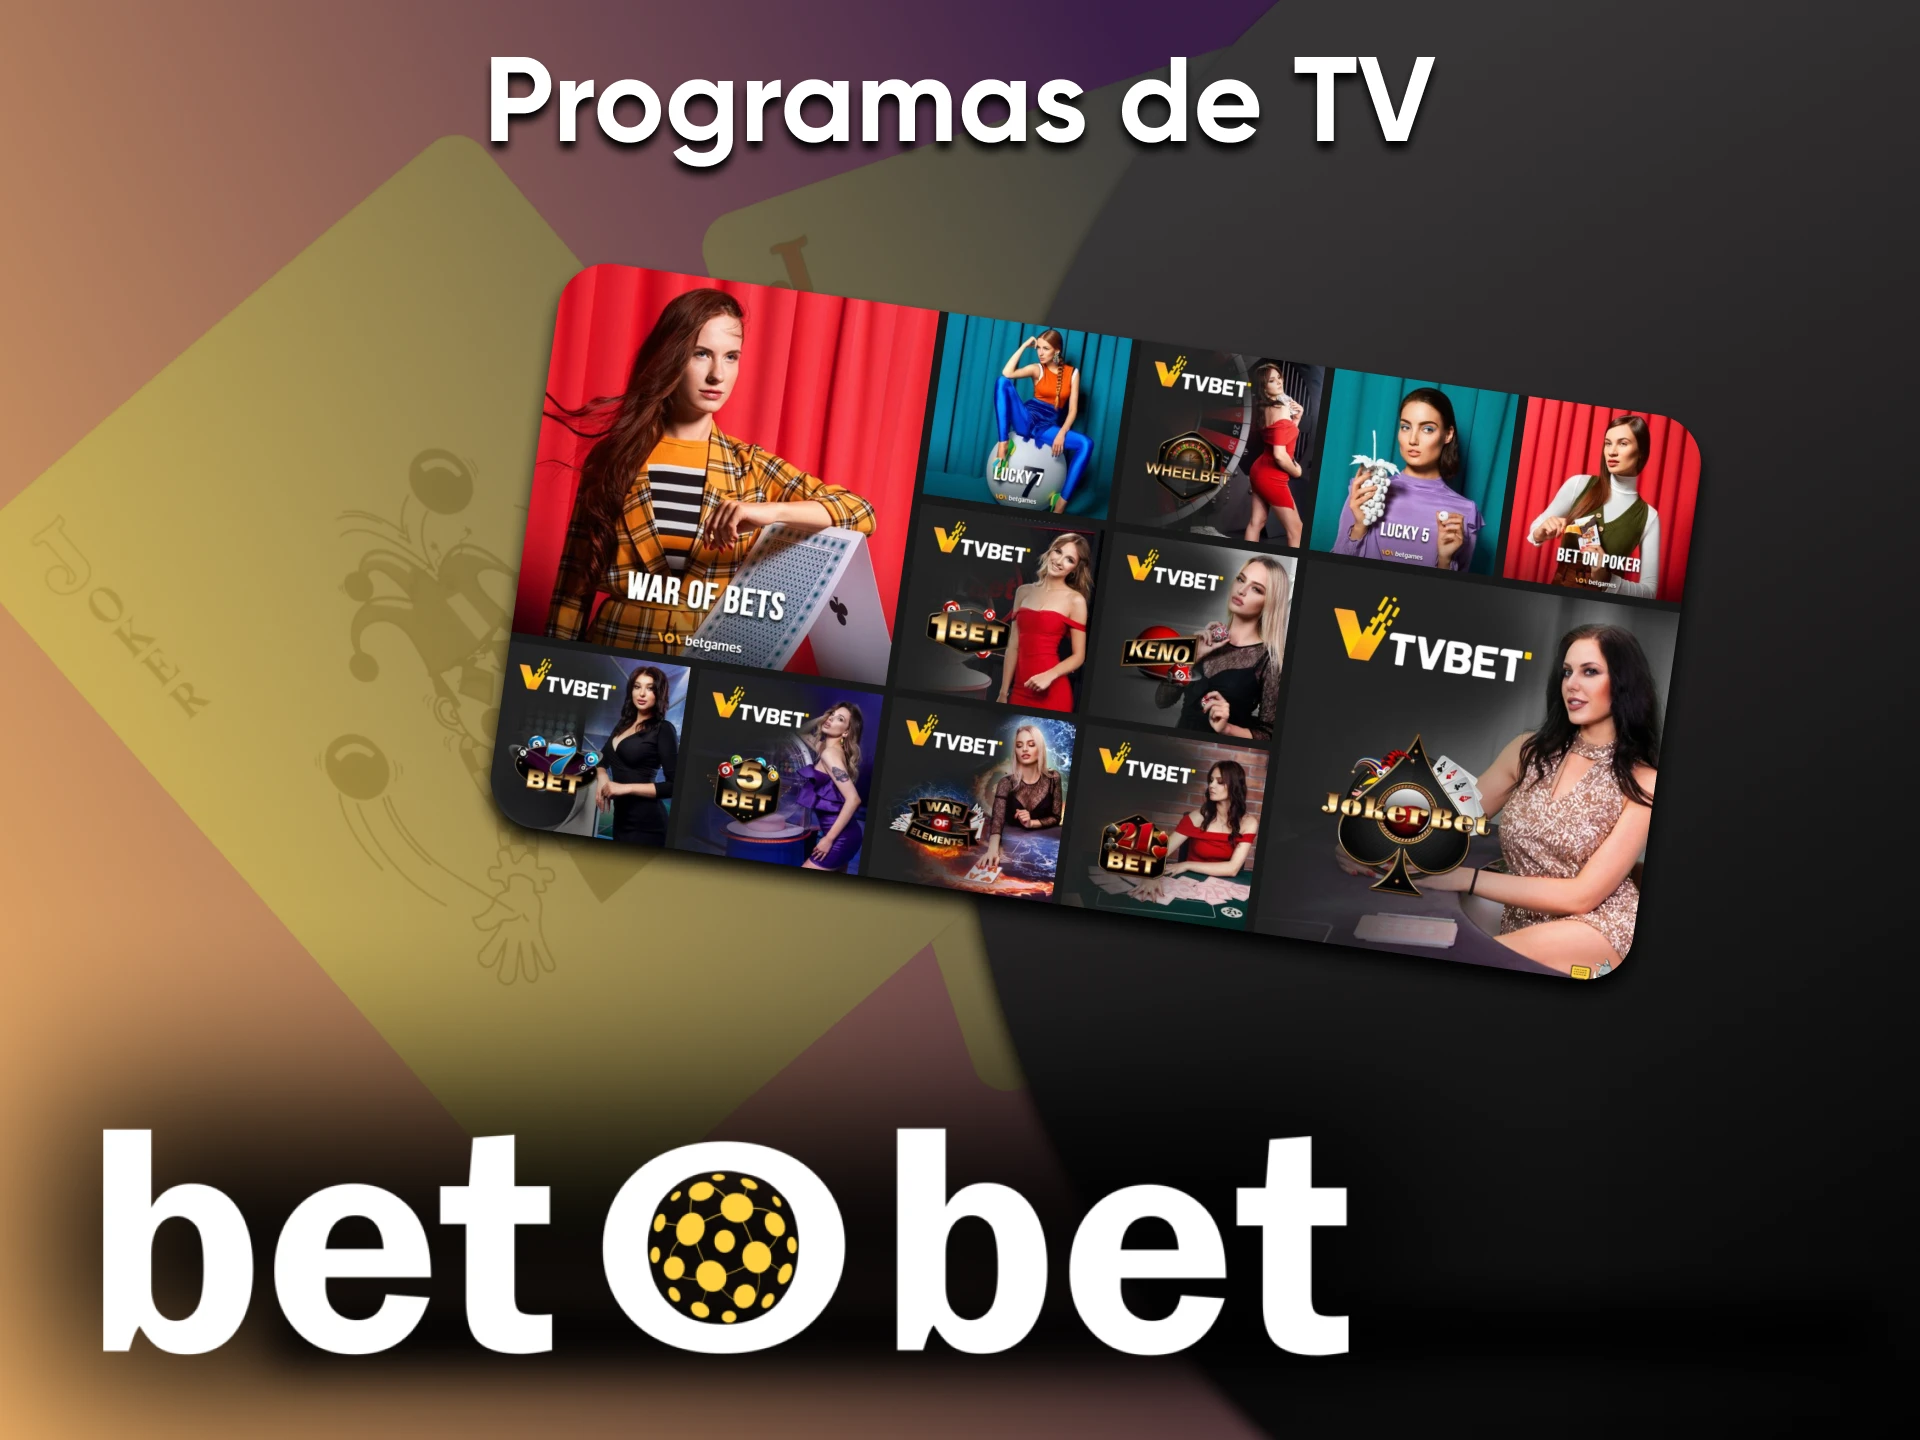 Participe de jogos em programas de TV com Betobet.